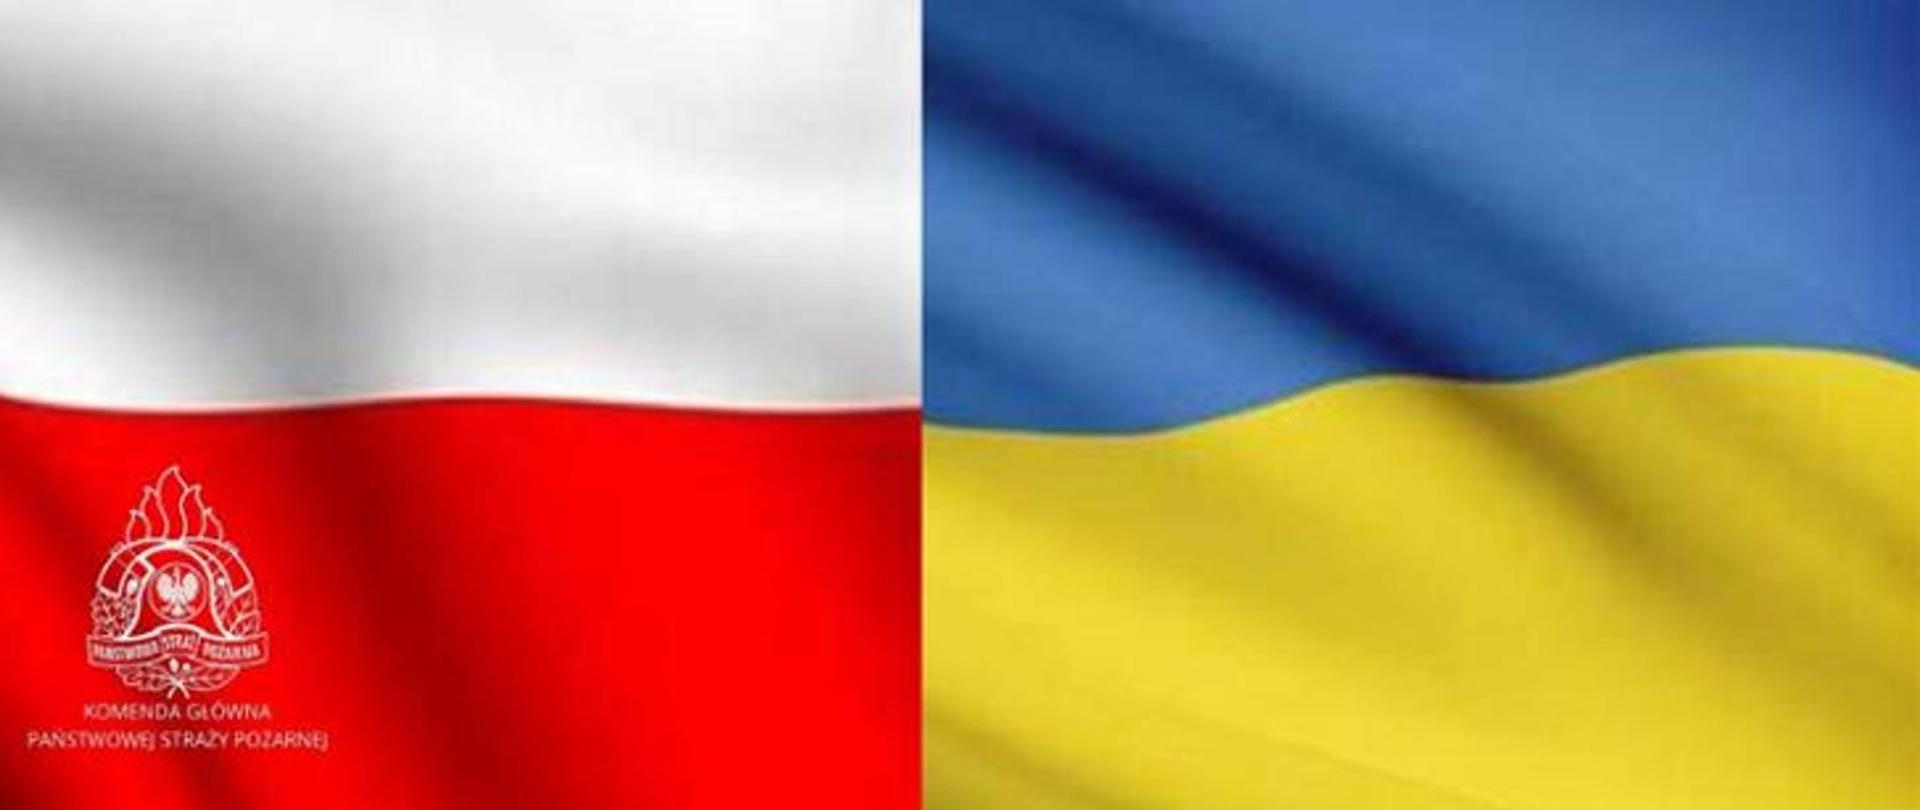 Zdjęcie przedstawia dwie połączone ze sobą flagi państwowe. Z lewej strony widoczna jest flaga Polski z logo Państwowej Straży Pożarnej i napisem Komenda Główna Państwowej Straży Pożarnej w lewym dolnym rogu oraz z prawej strony flaga Ukrainy, jako symbol wsparcia dla ukraińskich strażaków